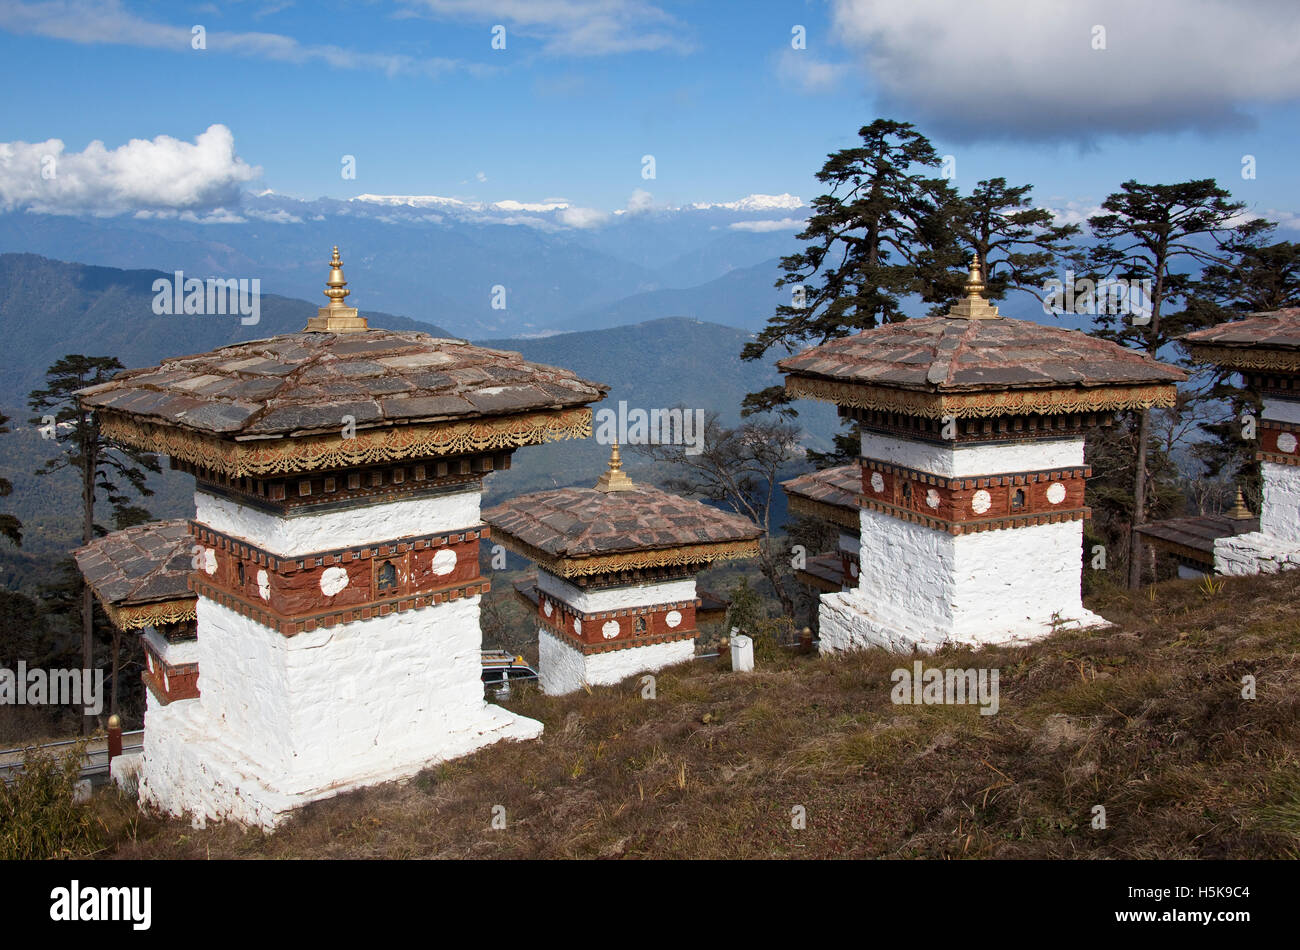 Himalaya view and stupas from Dochu La pass, Bhutan, South Asia Stock Photo